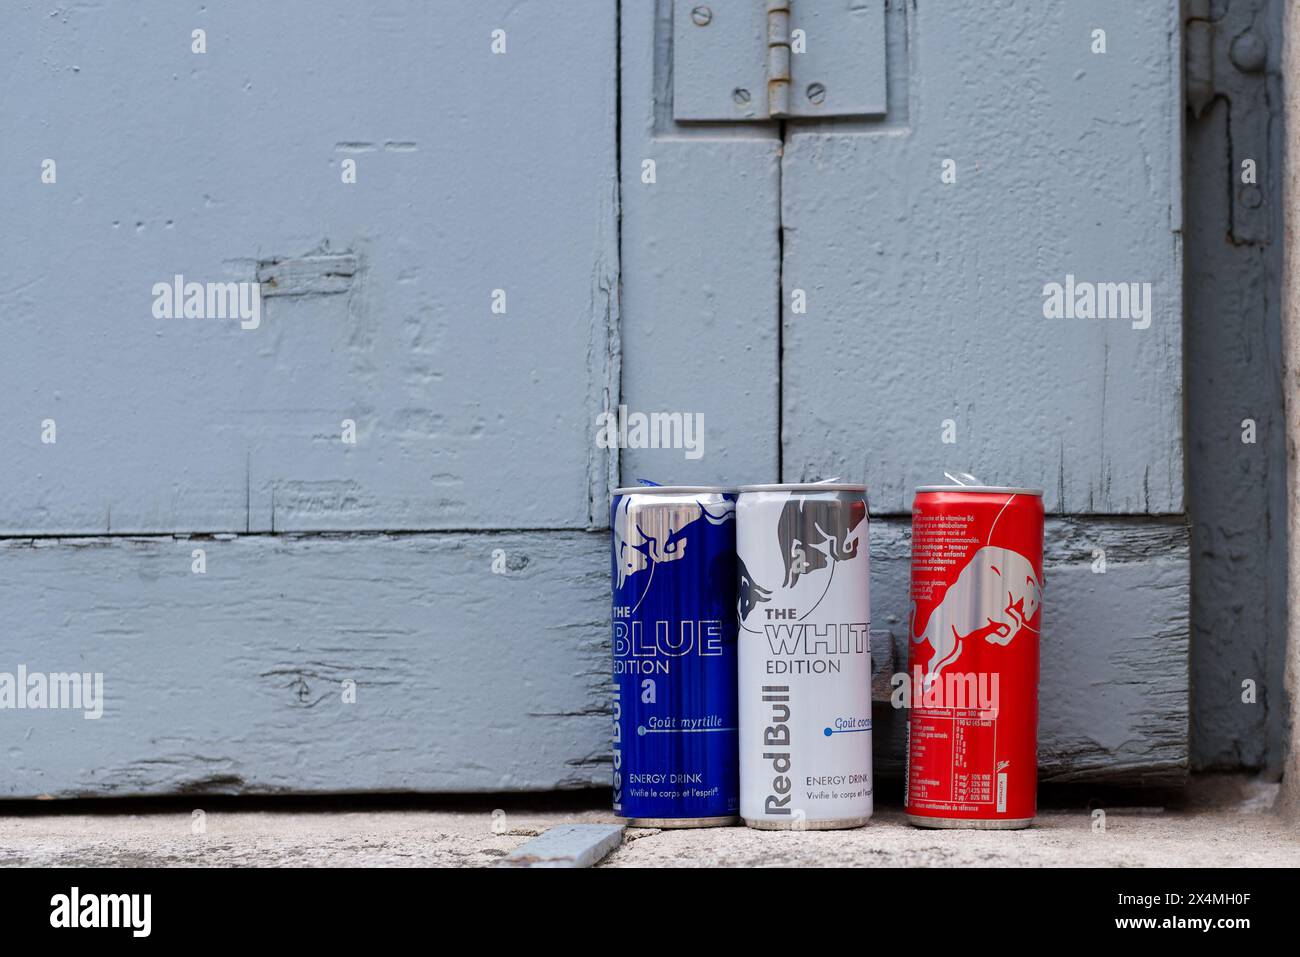 Lyon, Frankreich. Drei Dosen Red Bull Energy Drink in den Farben Blau, weiß und Rot stehen auf einer Fensterbank. Kopierbereich Stockfoto